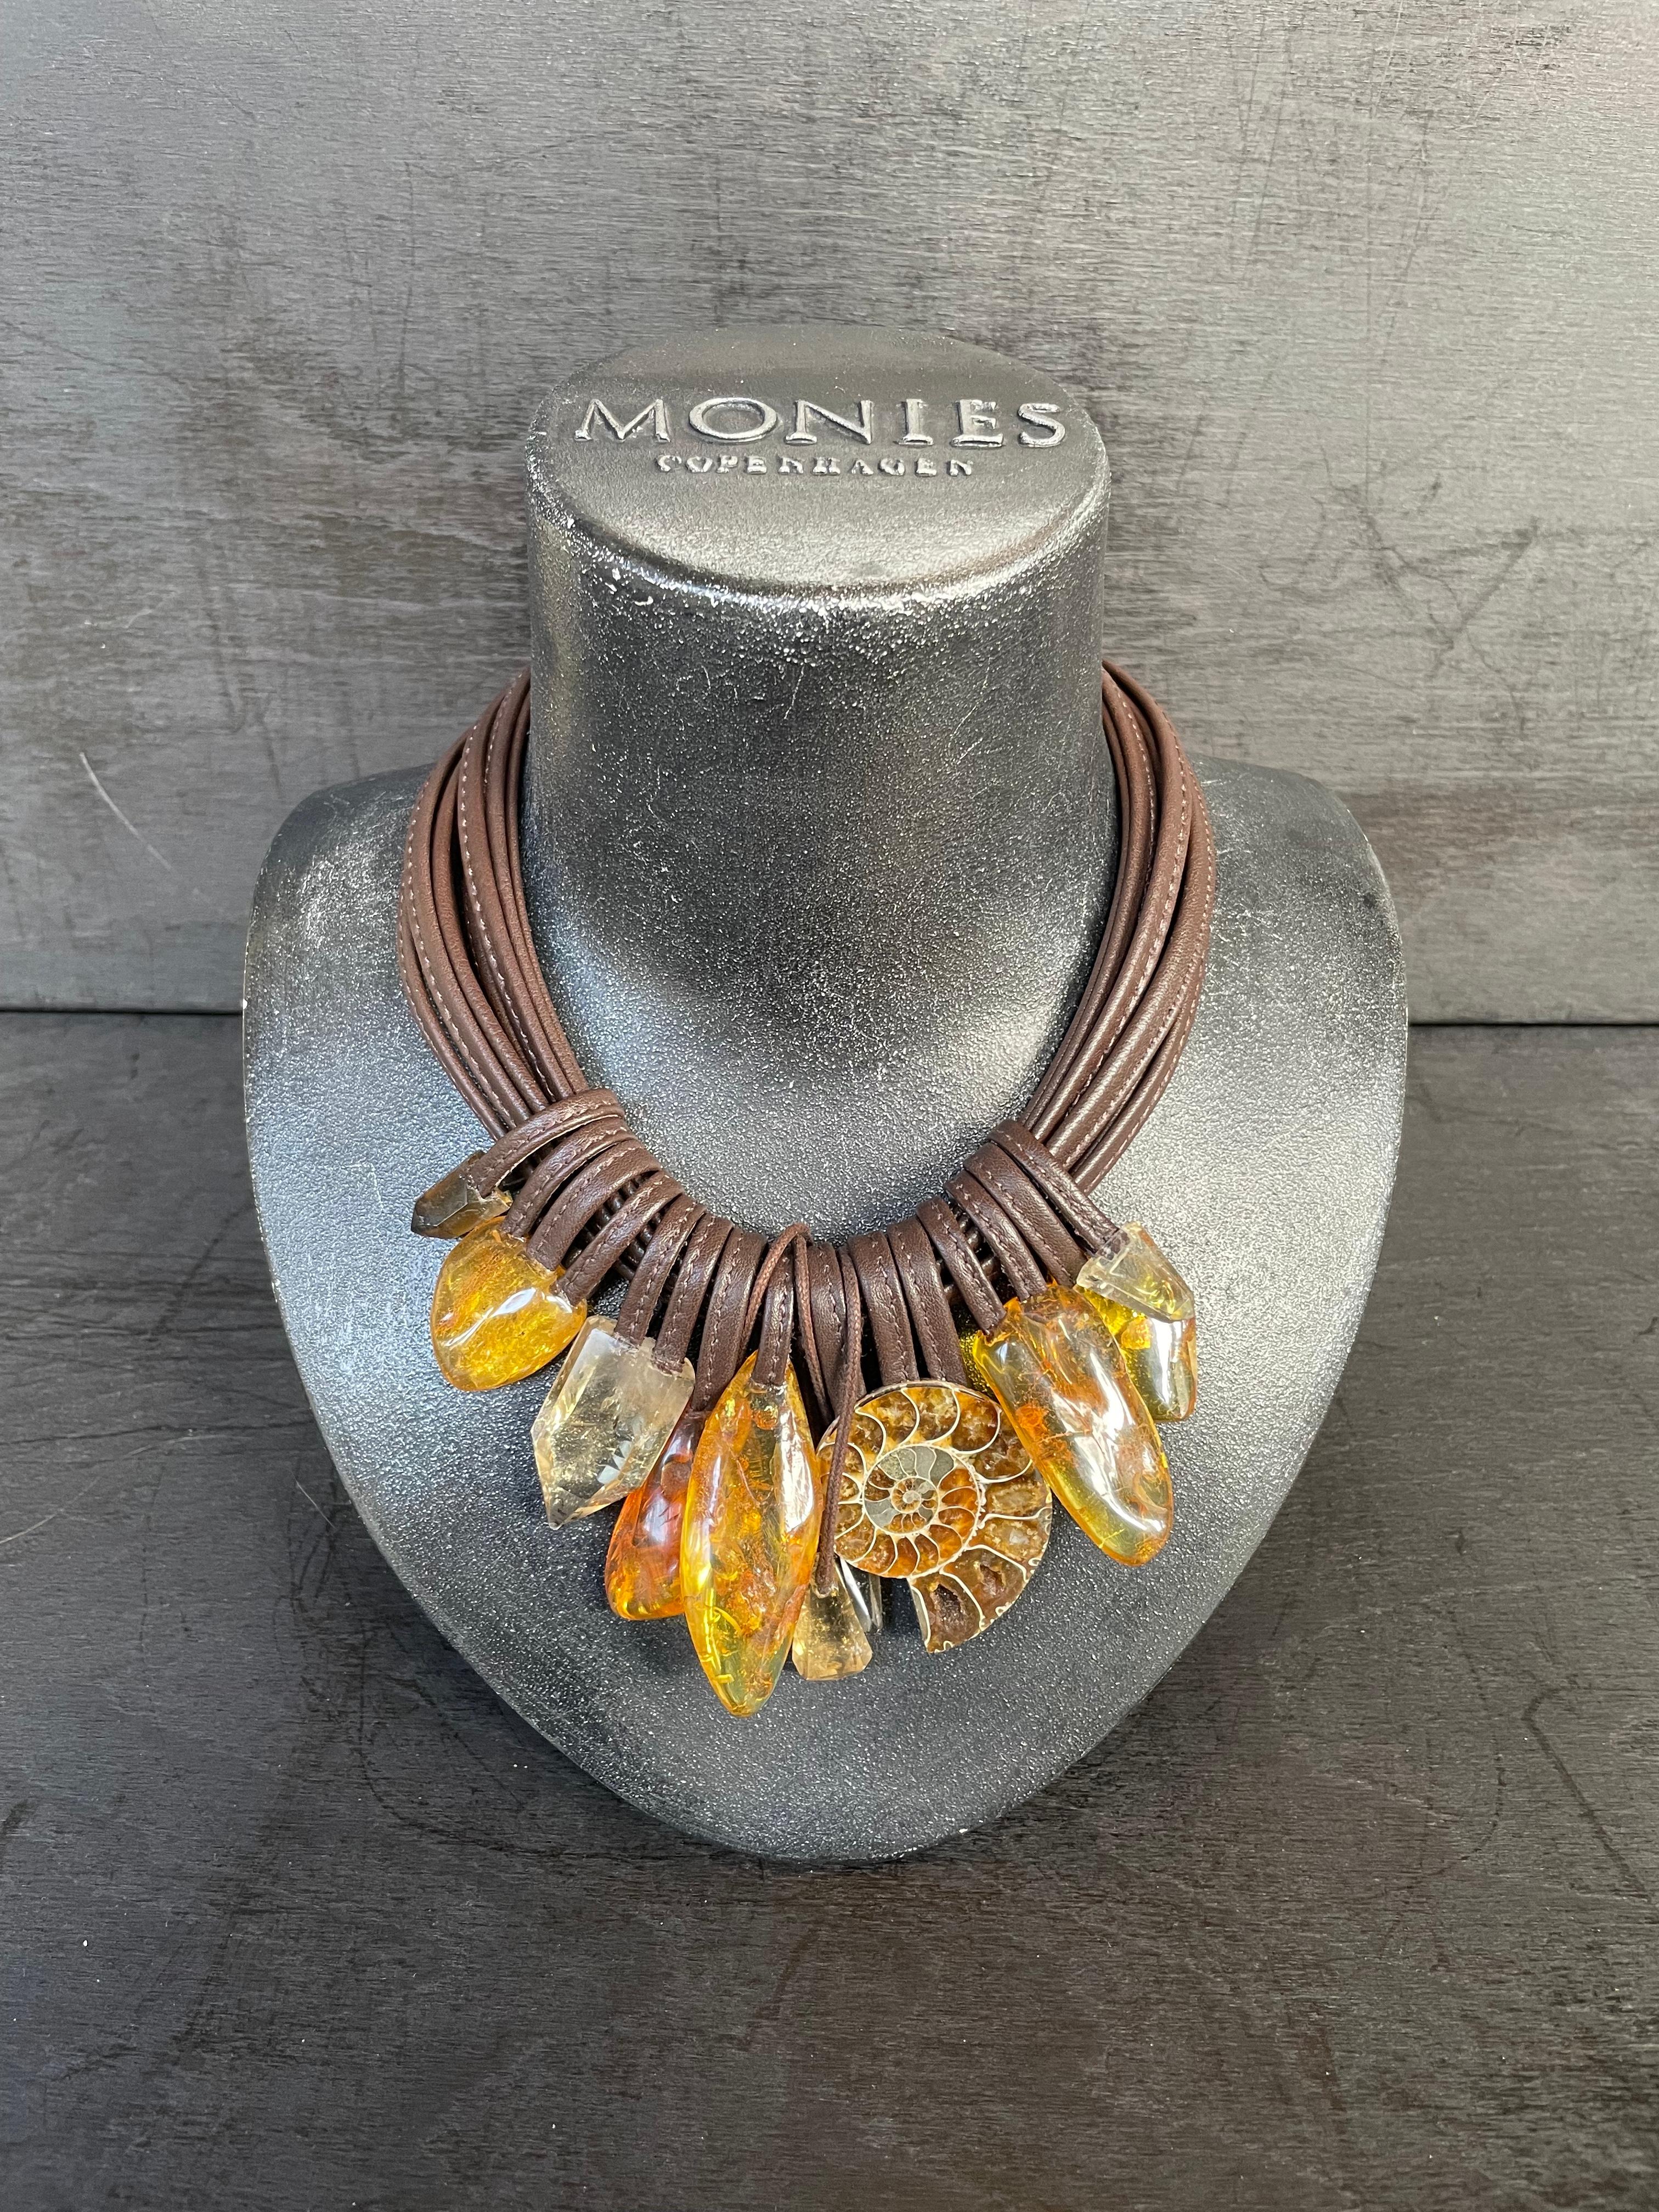 Collier unique de la marque de bijoux danoise Monies.
Fabriqué en ambre, ammonites, cristal et cuir avec un fermoir en cuir.

Fabriqué à la main dans l'atelier de Monies à Copenhague.